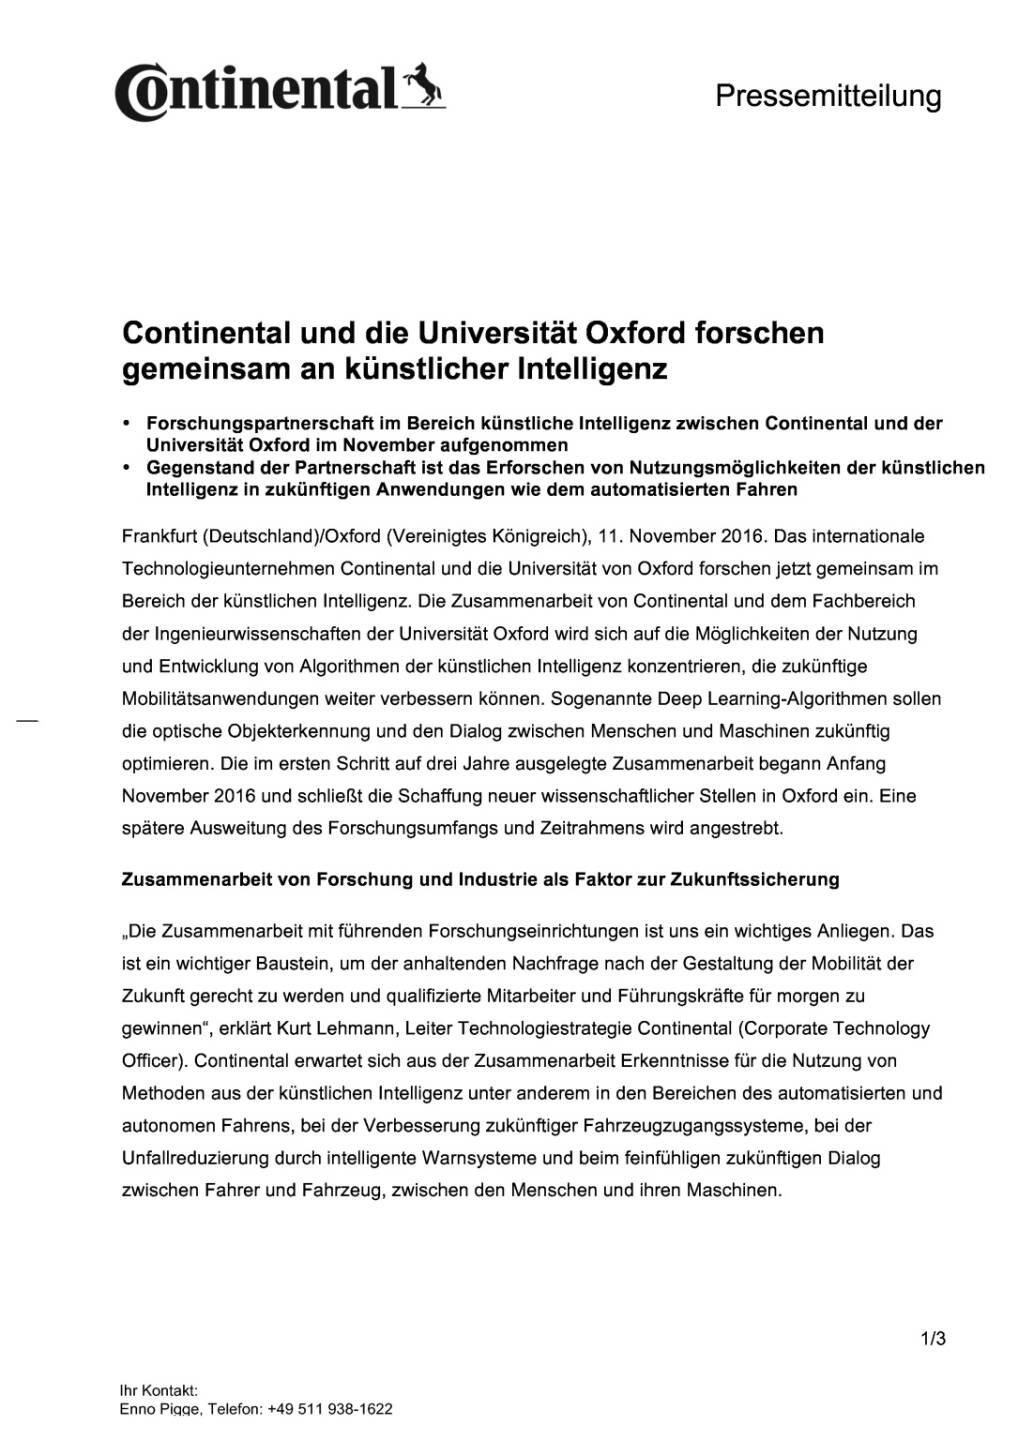 Continental und die Universität Oxford forschen gemeinsam an künstlicher Intelligenz, Seite 1/3, komplettes Dokument unter http://boerse-social.com/static/uploads/file_1972_continental_und_die_universitat_oxford_forschen_gemeinsam_an_kunstlicher_intelligenz.pdf